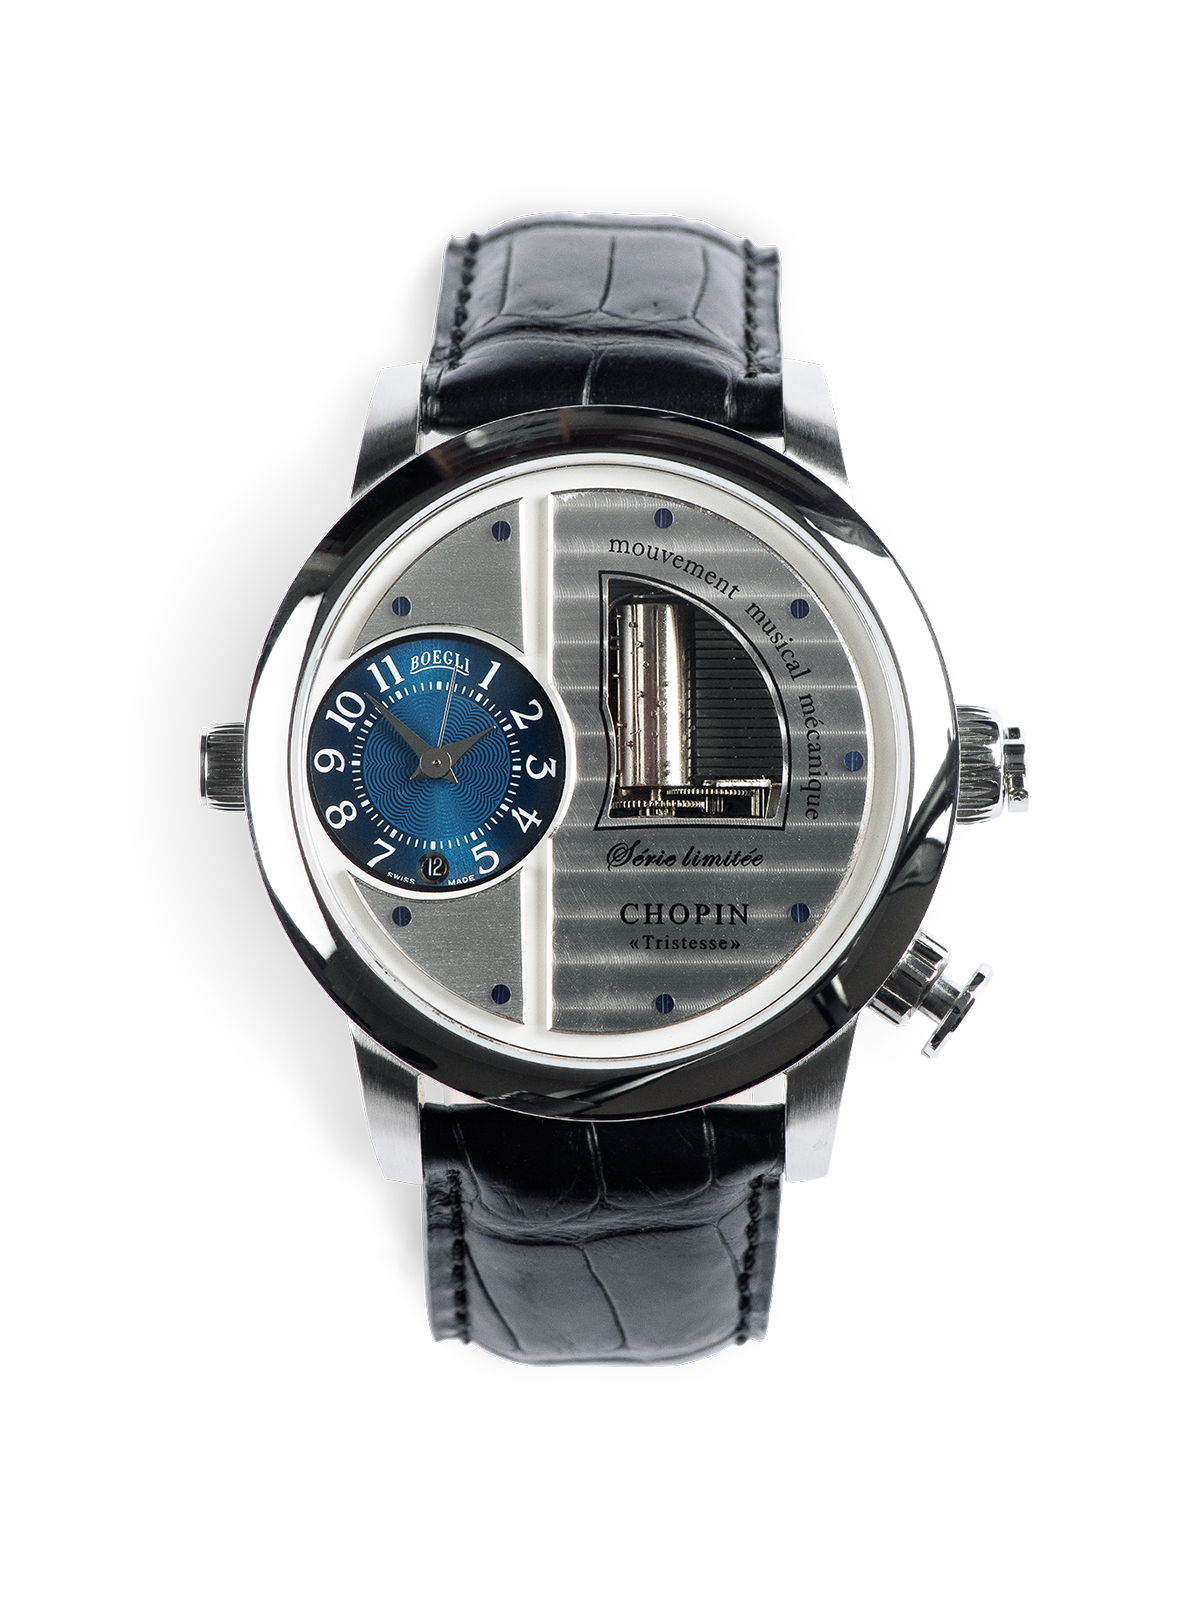 Breguet & Fils, musical pocket watch | pocket-watches